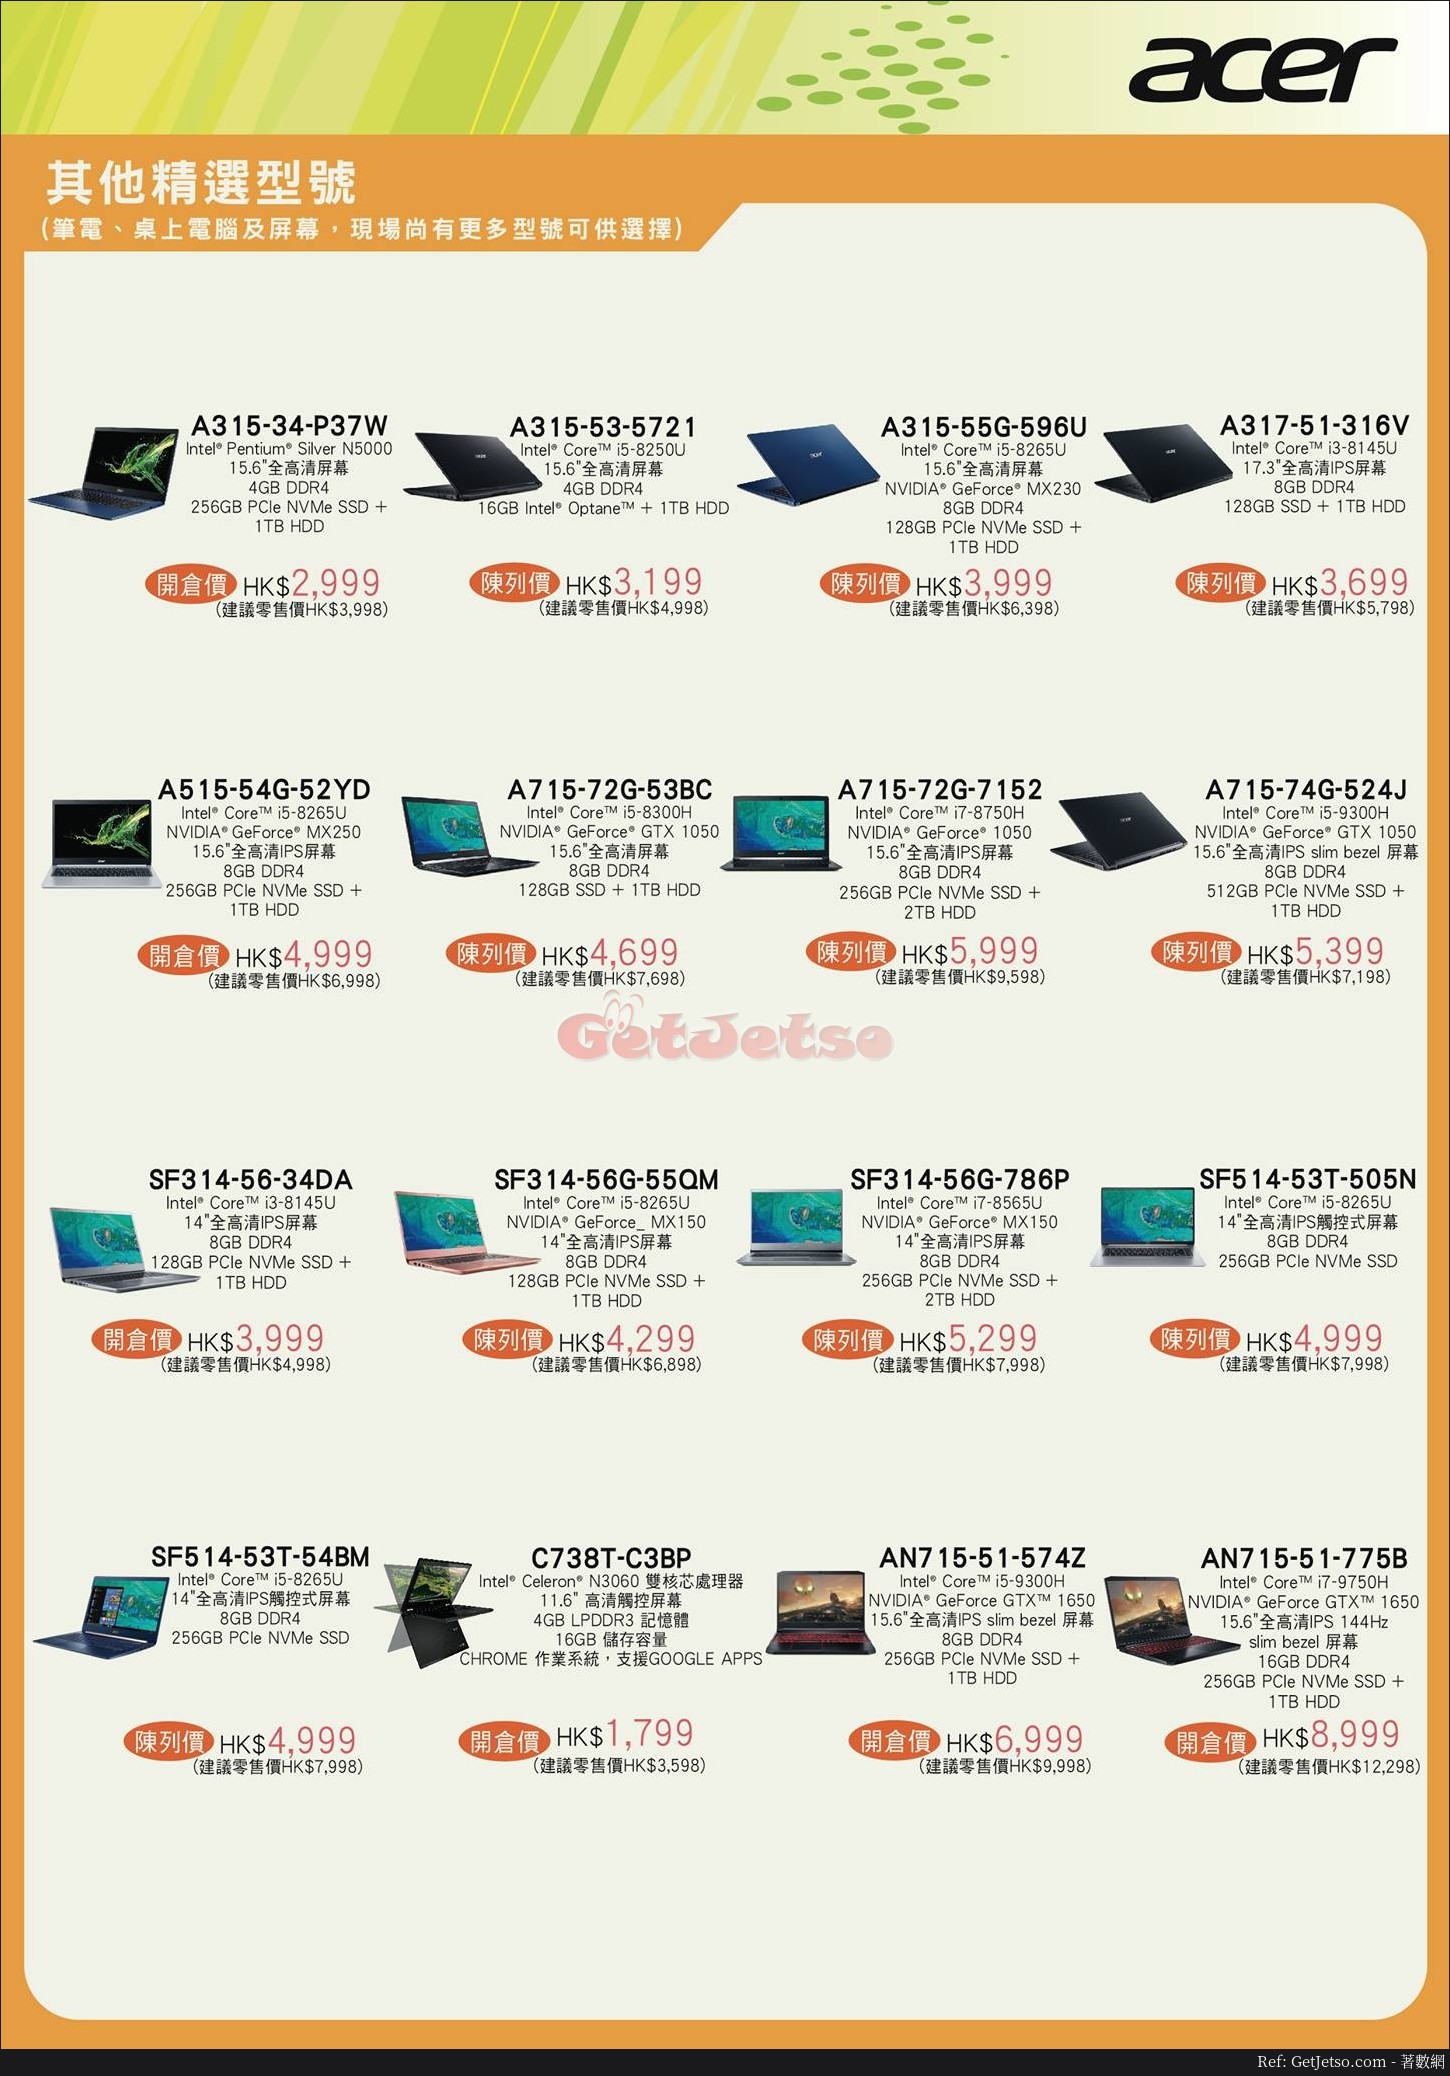 Acer 低至4折限時開倉優惠(19年11月11-14日)圖片2